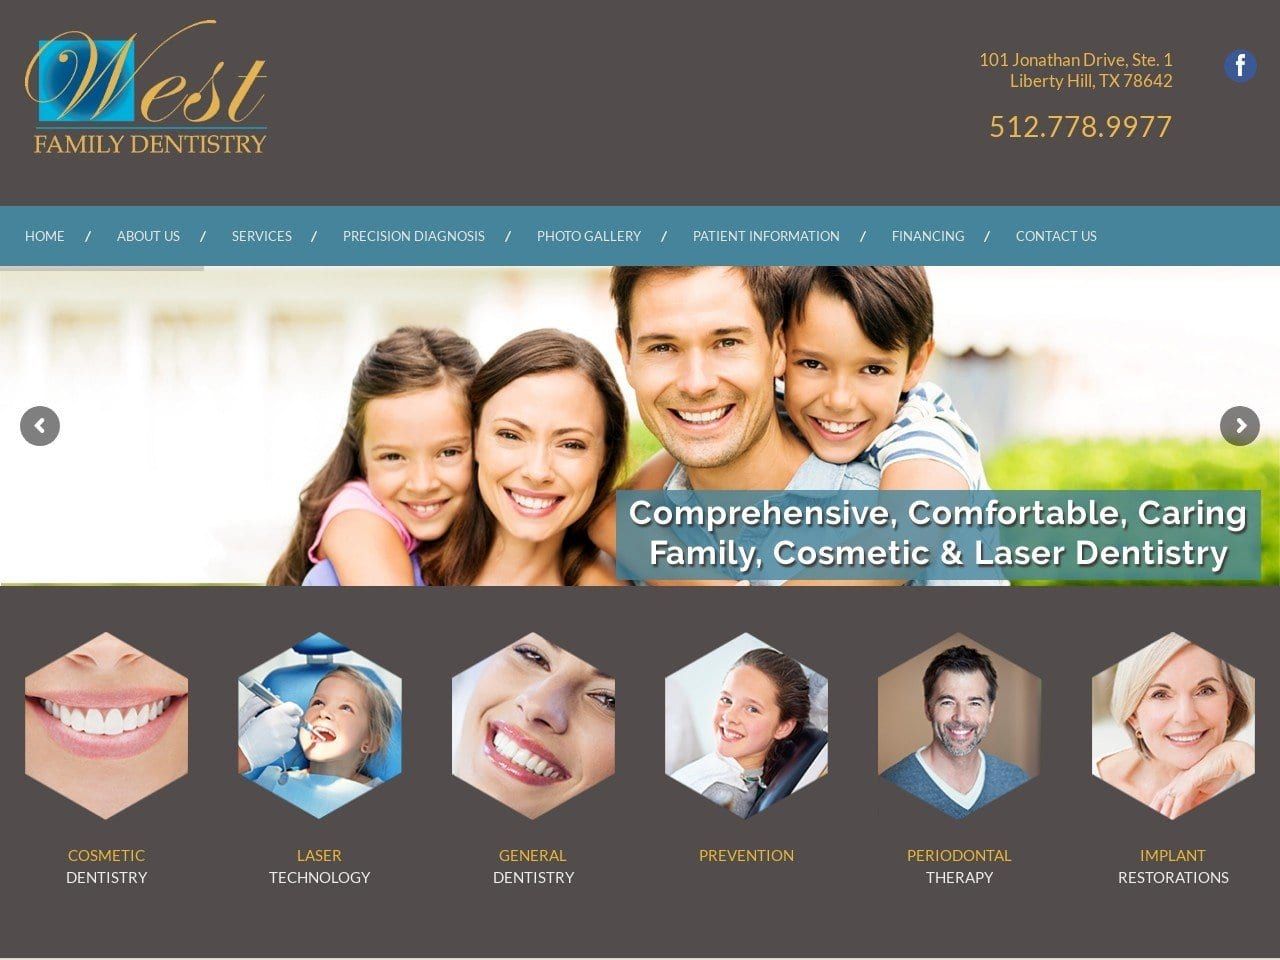 West Family Dentist Website Screenshot from westfamilydentistry.net